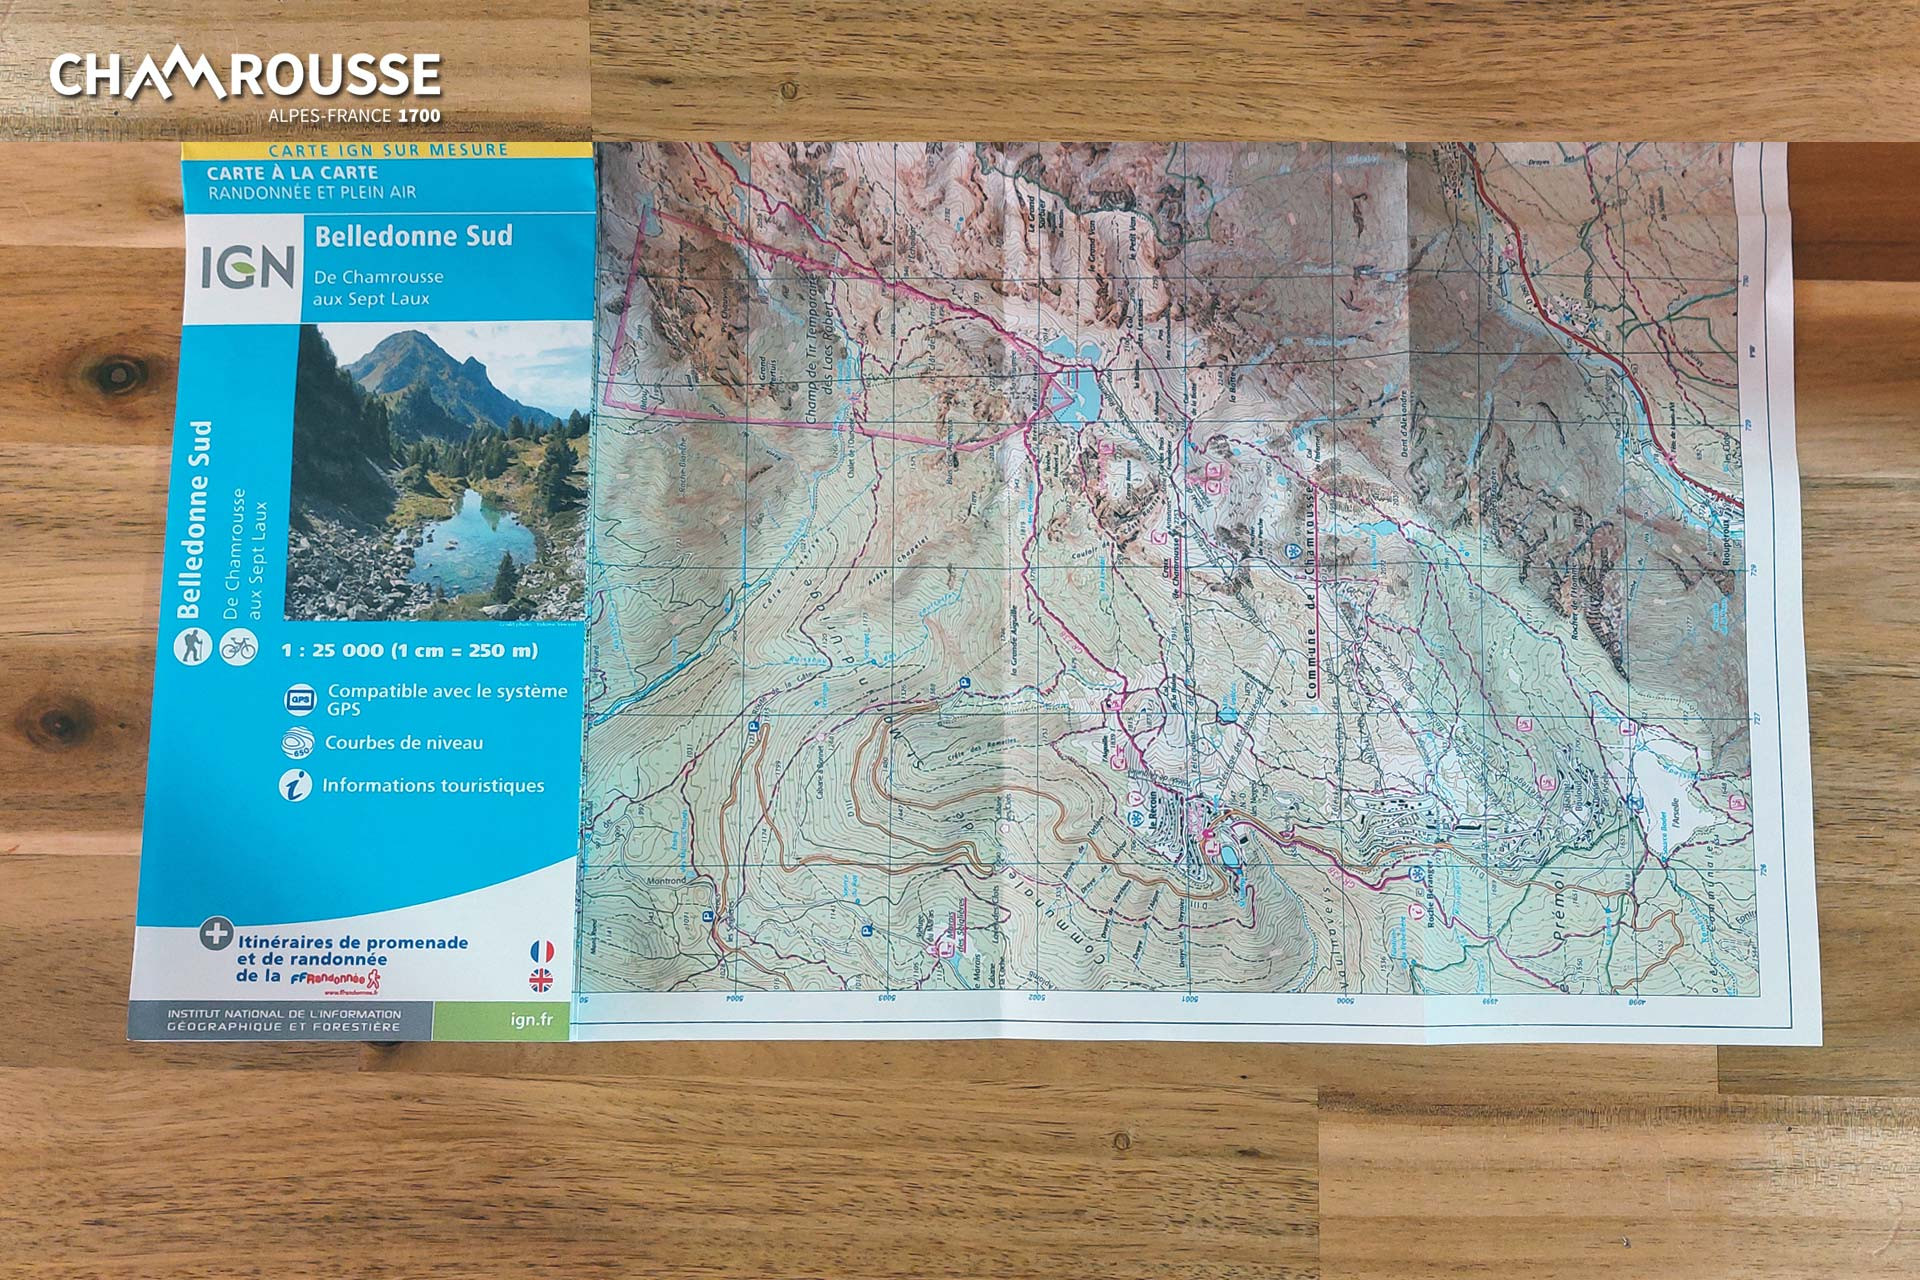 Chamrousse carte randonnée IGN belledonne sud boutique souvenir cadeau station montagne grenoble isère alpes france